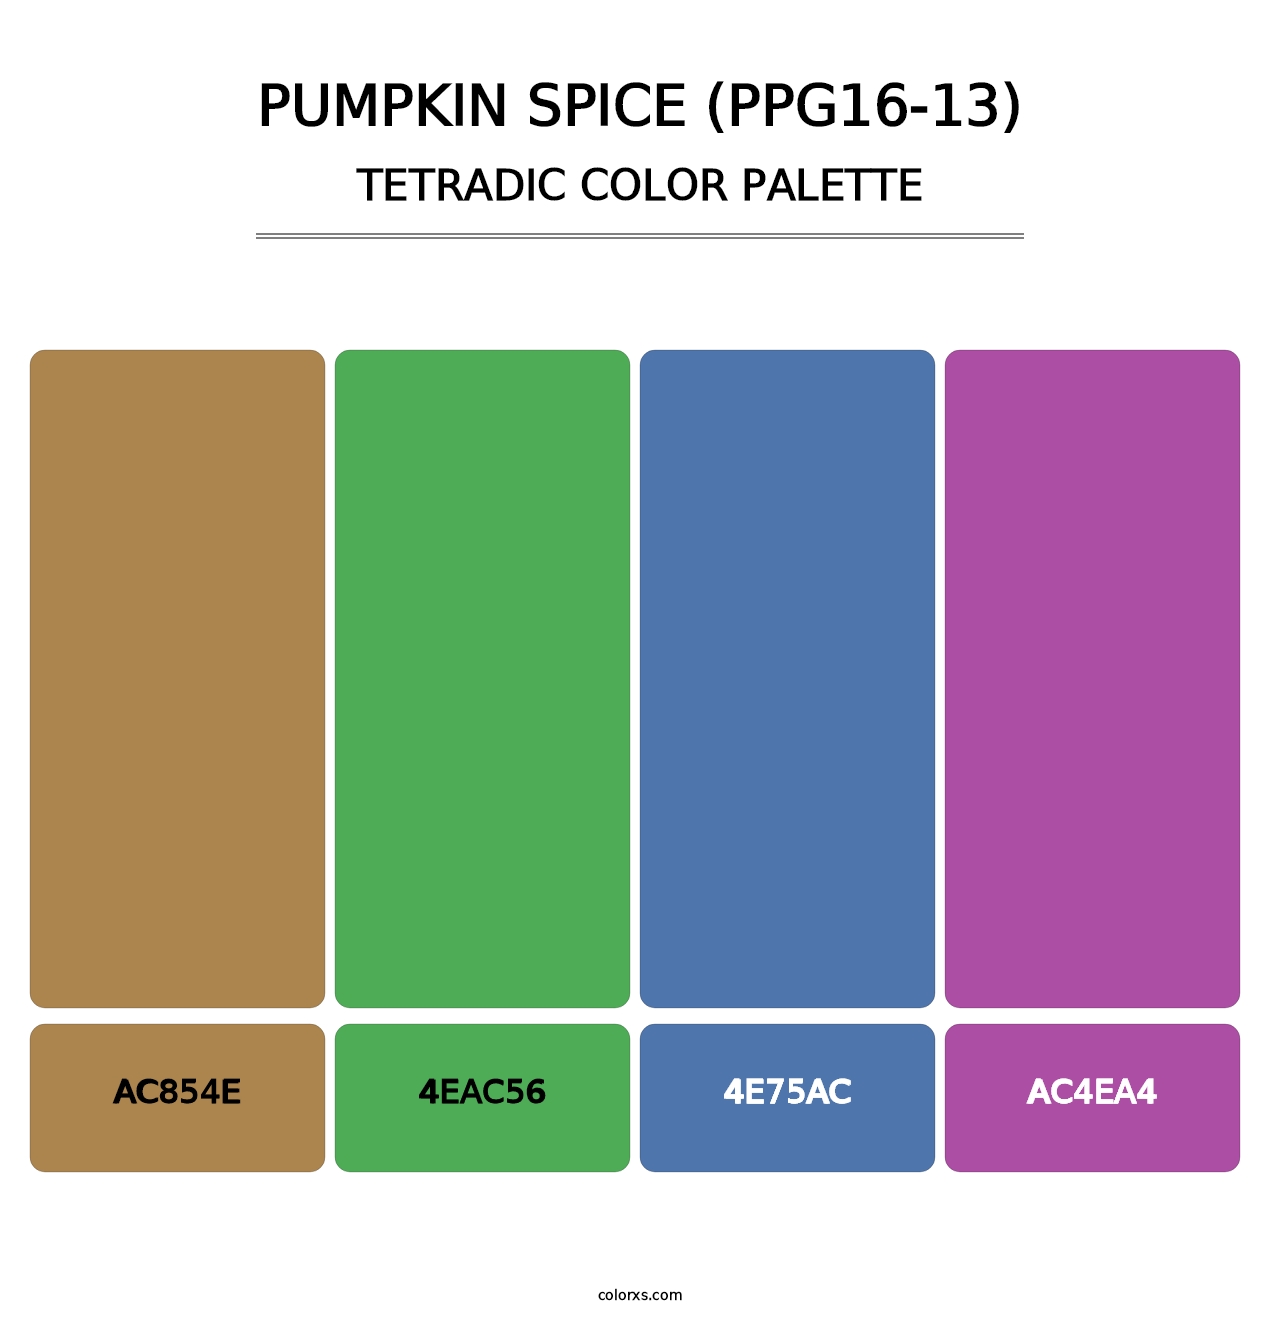 Pumpkin Spice (PPG16-13) - Tetradic Color Palette